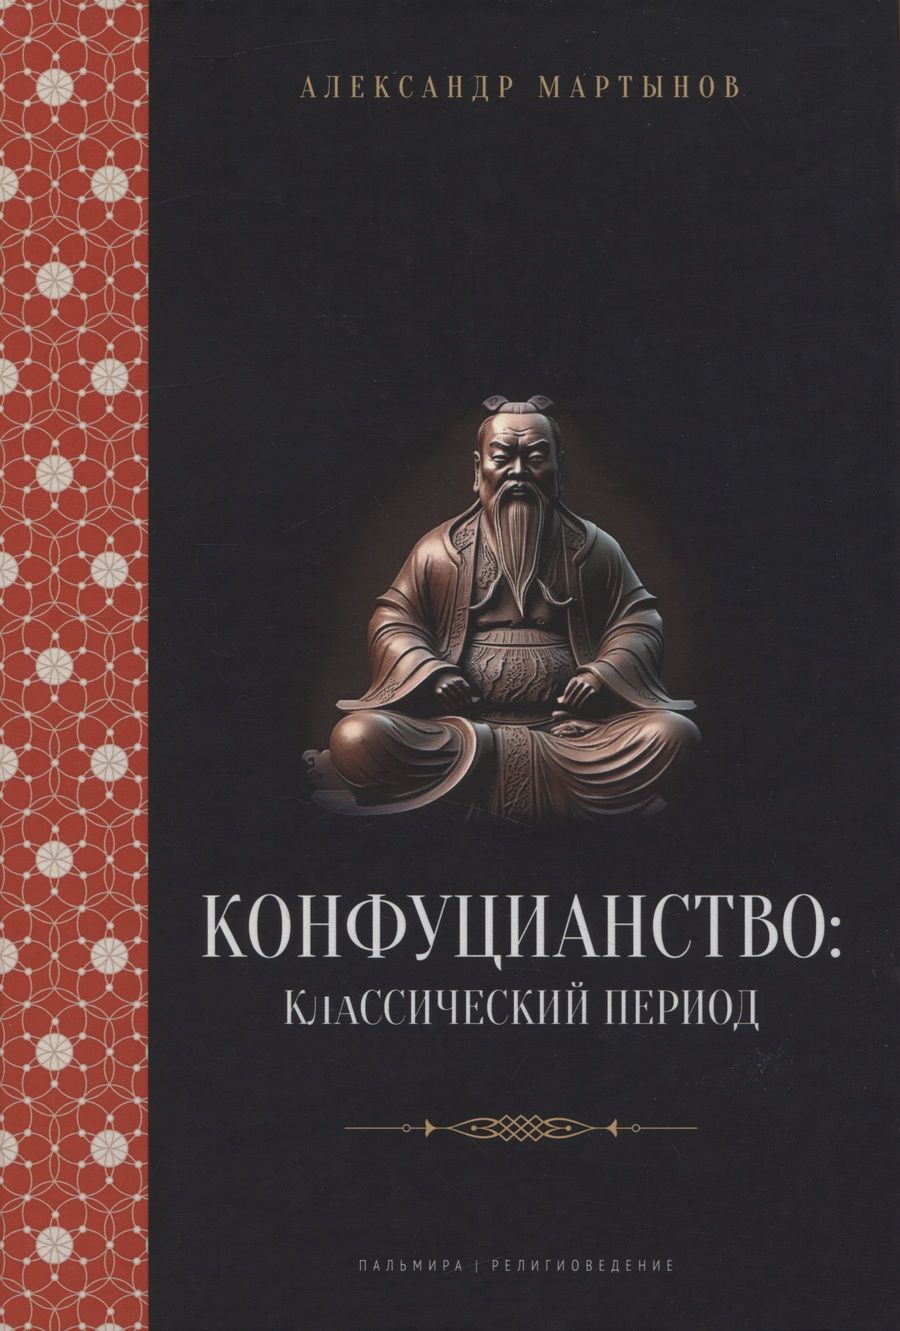 Обложка книги "Мартынов: Конфуцианство. Классический период"